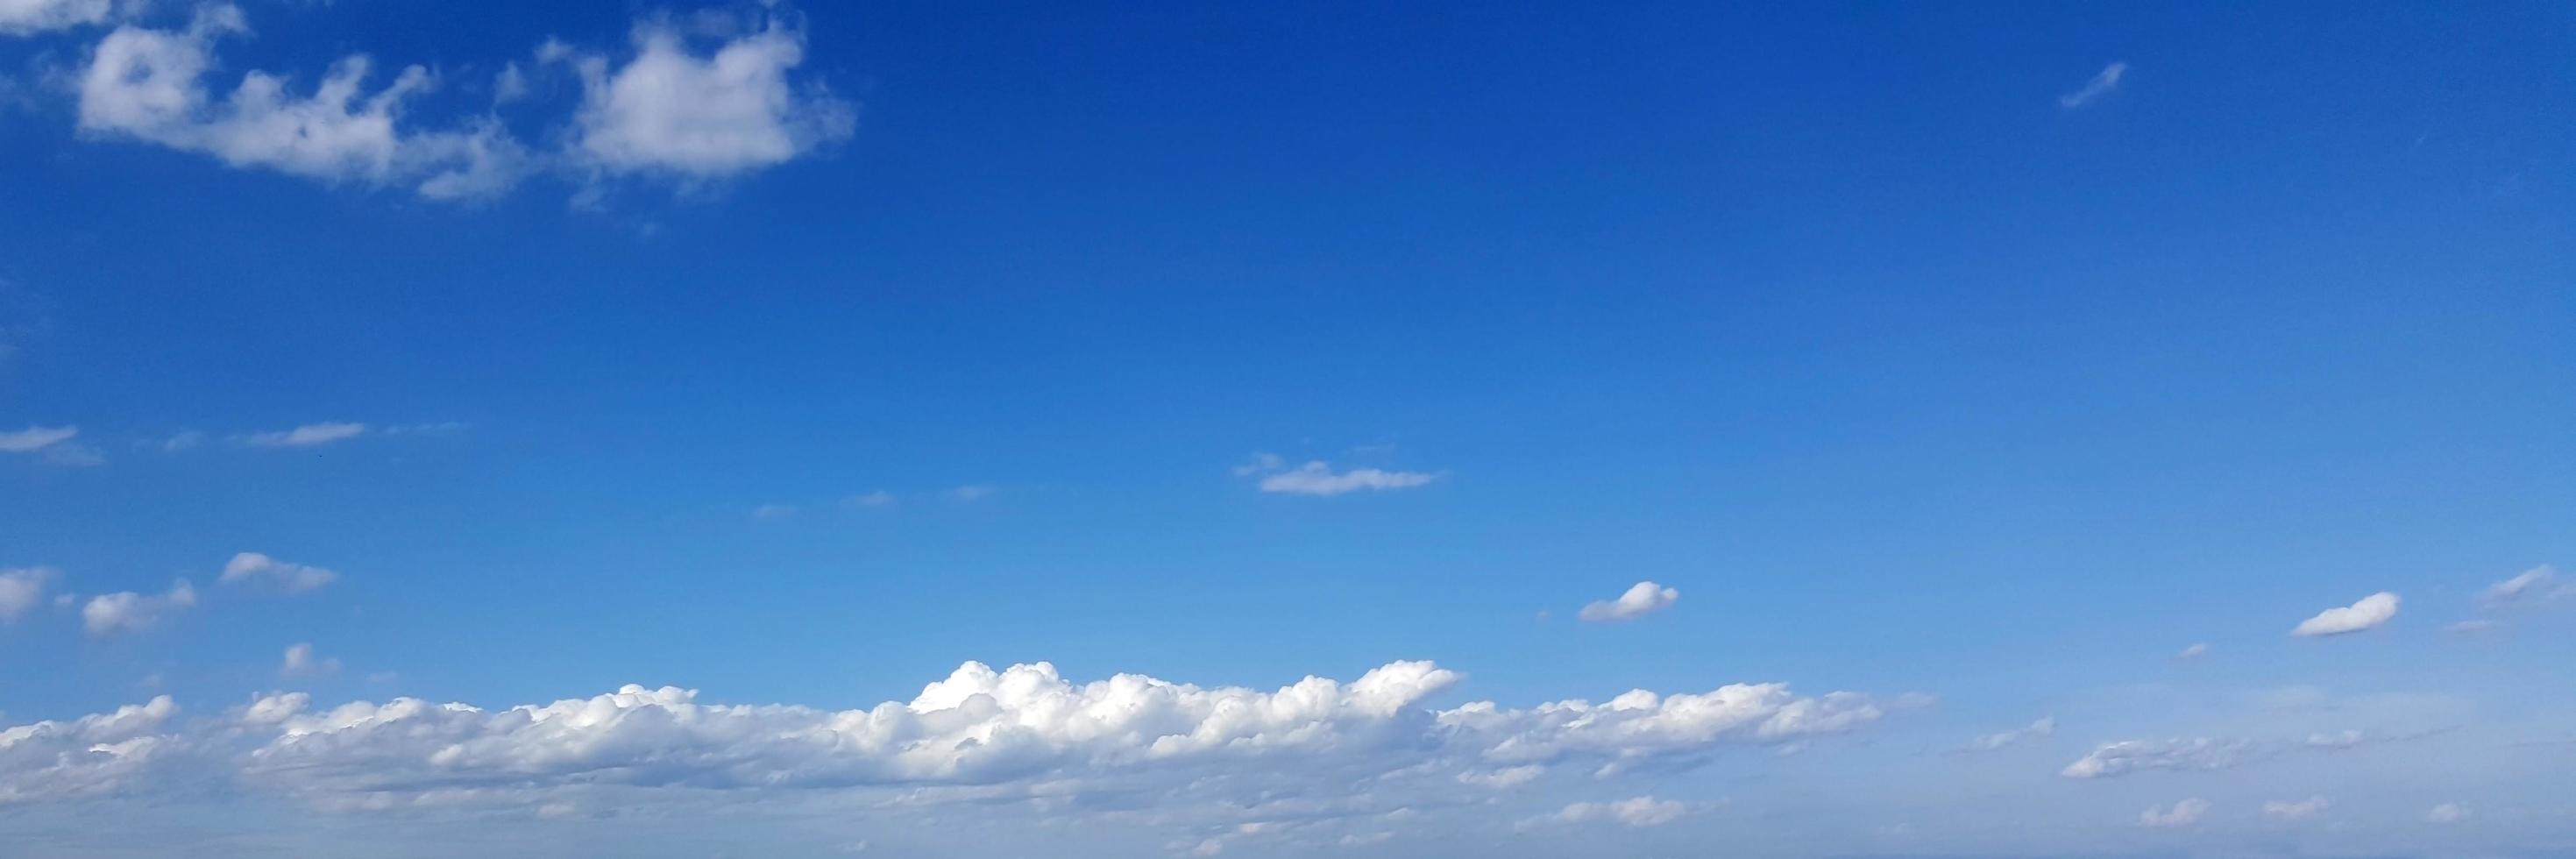 cielo panoramico con nuvole in una giornata di sole. foto